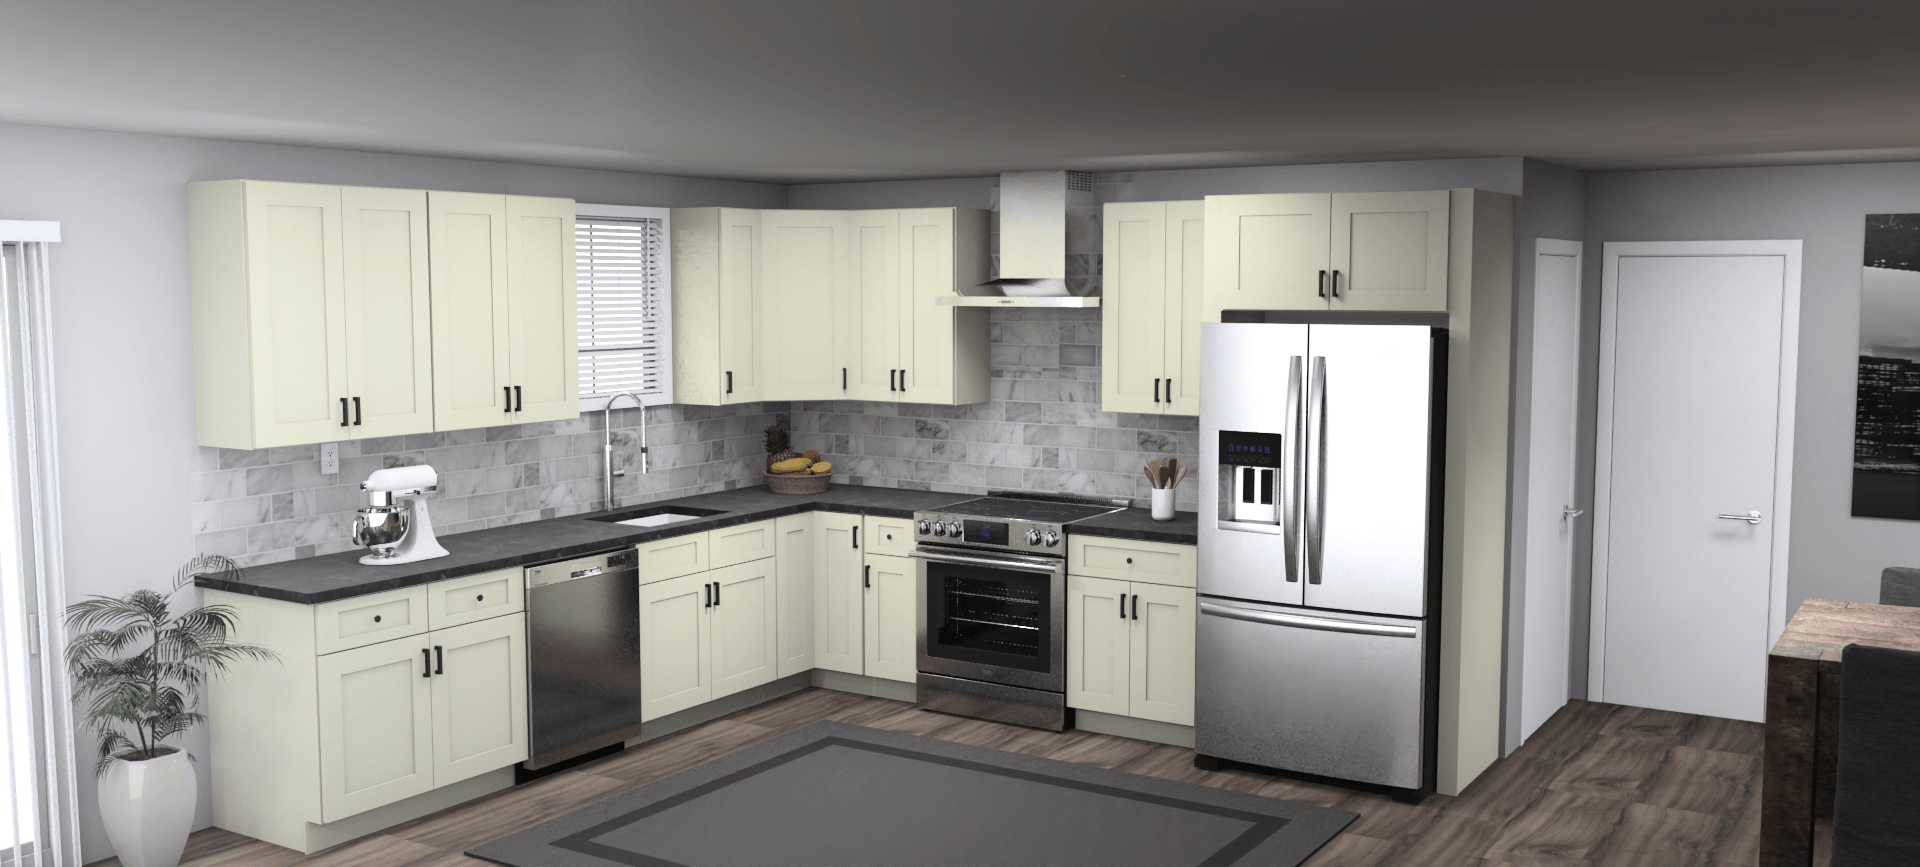 Fabuwood Allure Galaxy Linen 11 x 12 L Shaped Kitchen Main Layout Photo